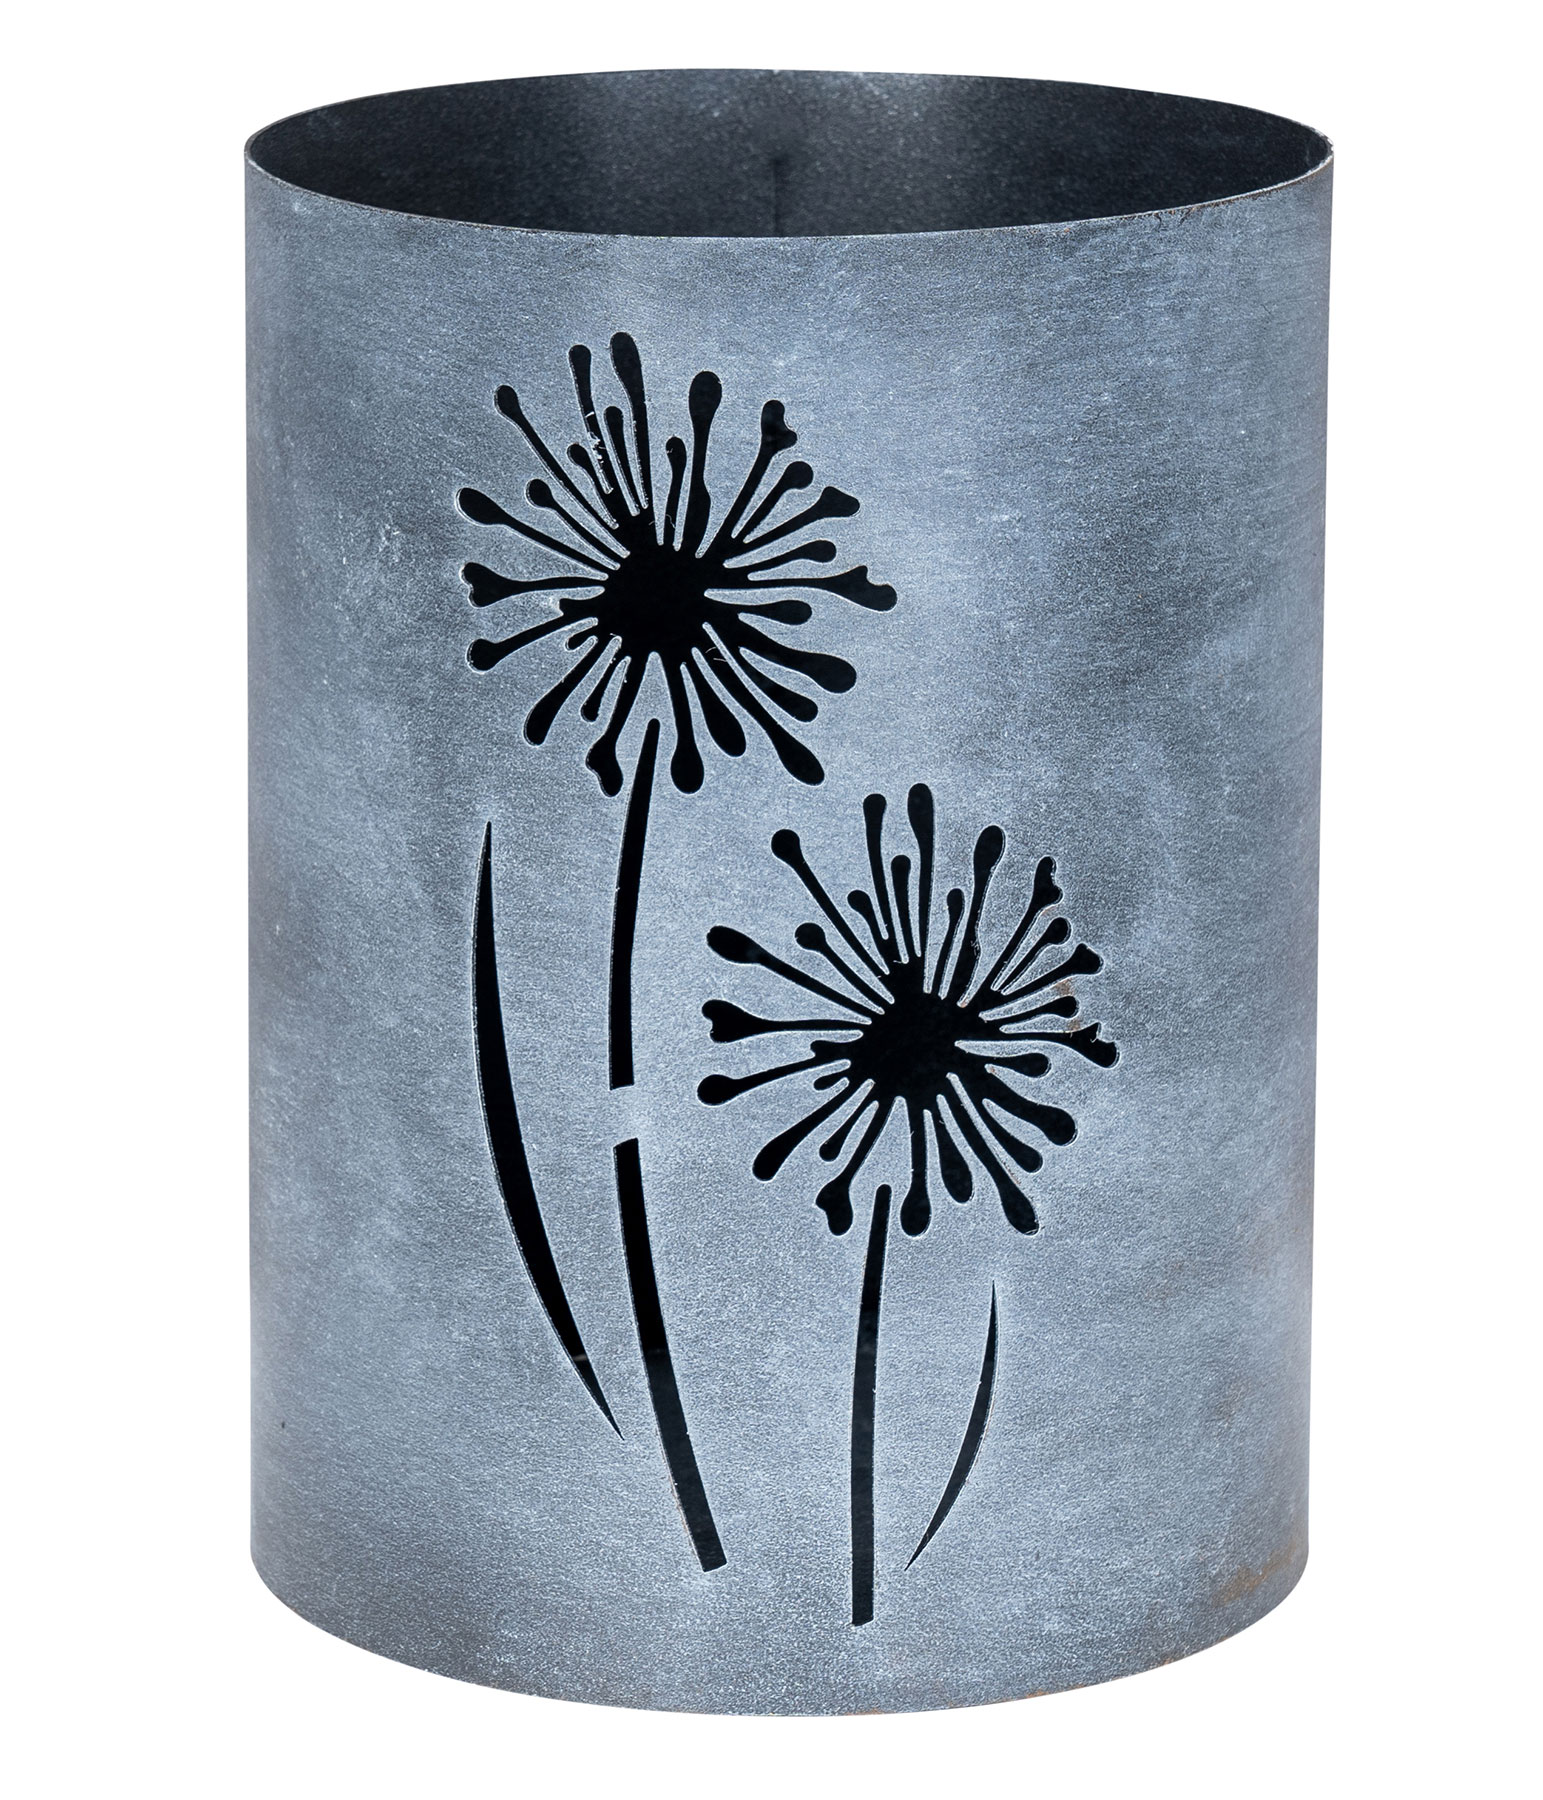 Windlicht Metall Grau Pusteblume H20cm Garten Deko Gartenleuchte Kerzenhalter